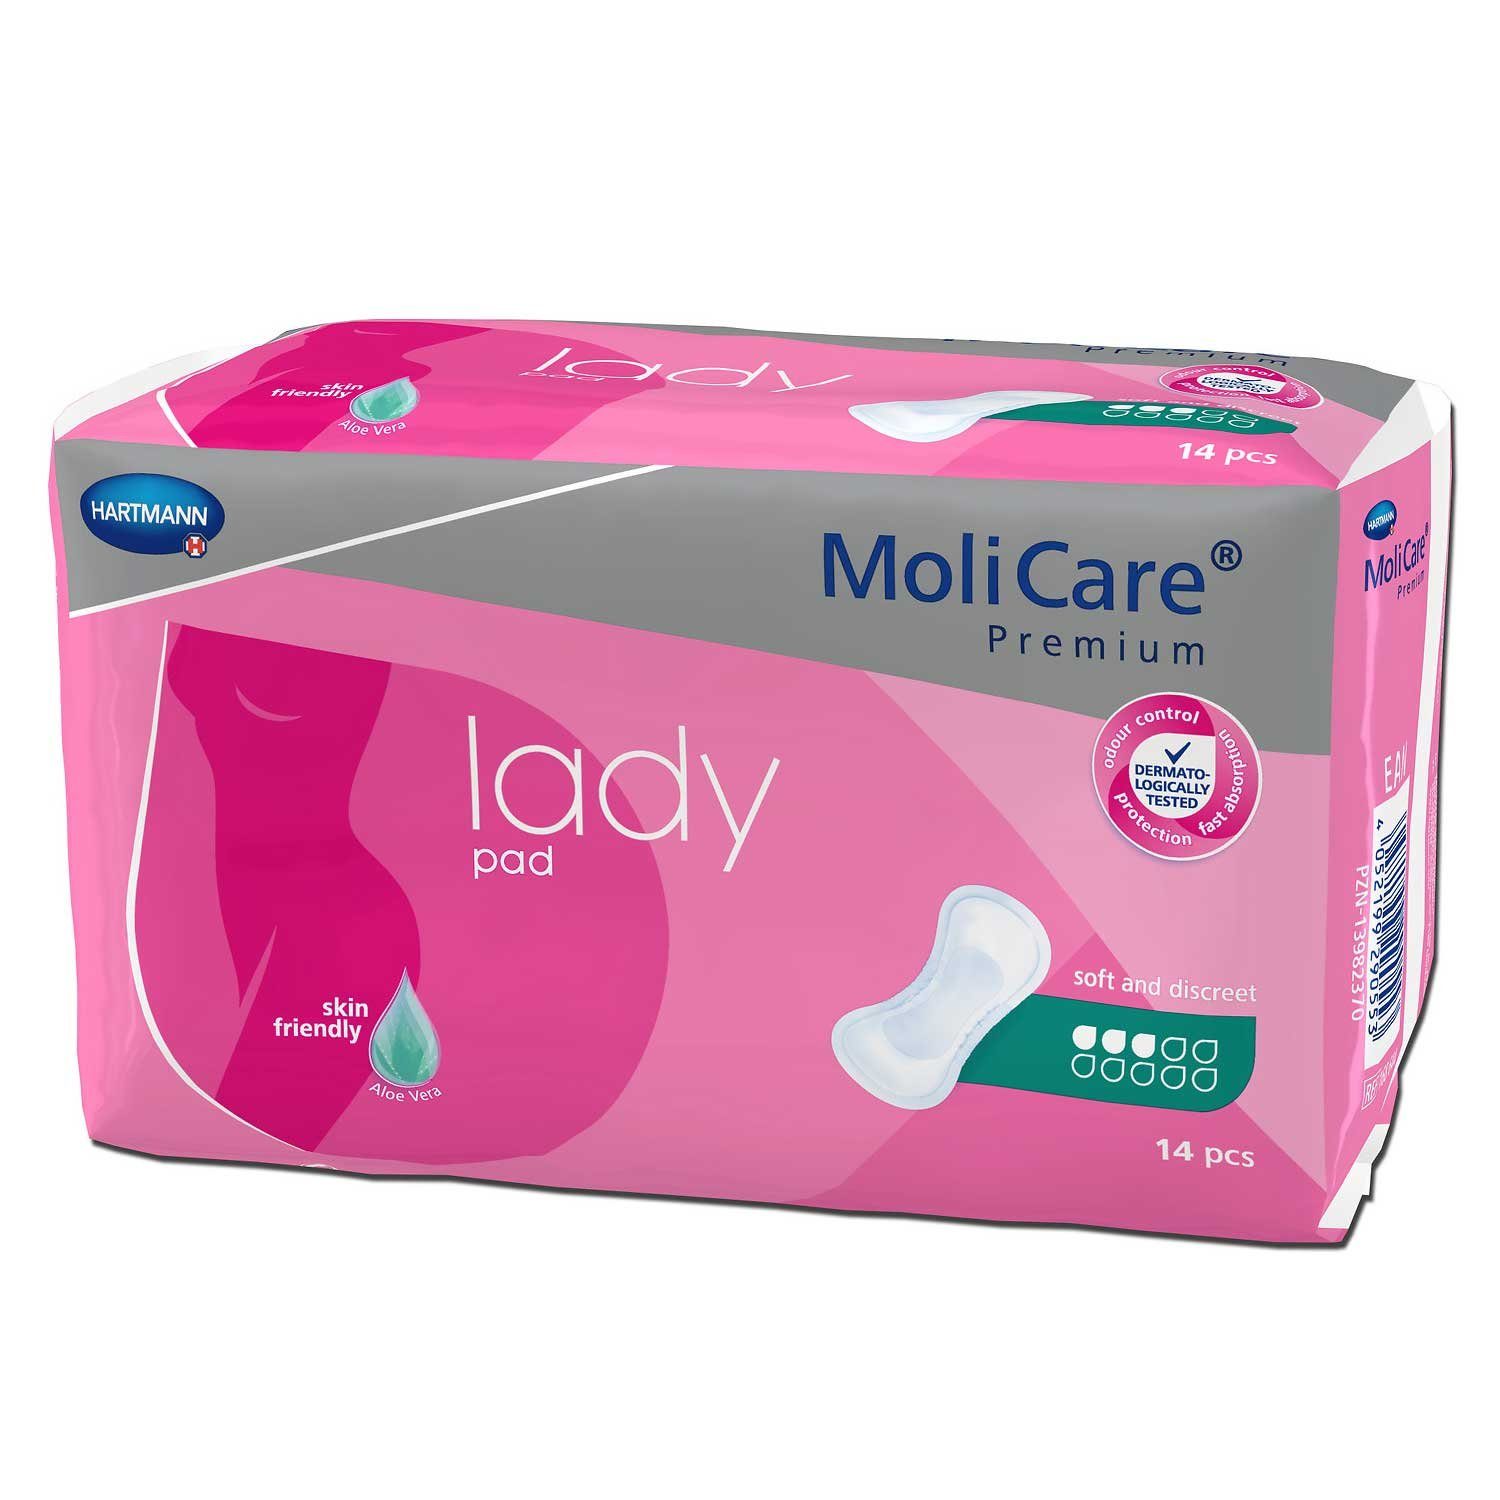 Molicare Saugeinlage MoliCare® Premium lady pad 3 Tropfen, für ein hohes Maß an Diskretion